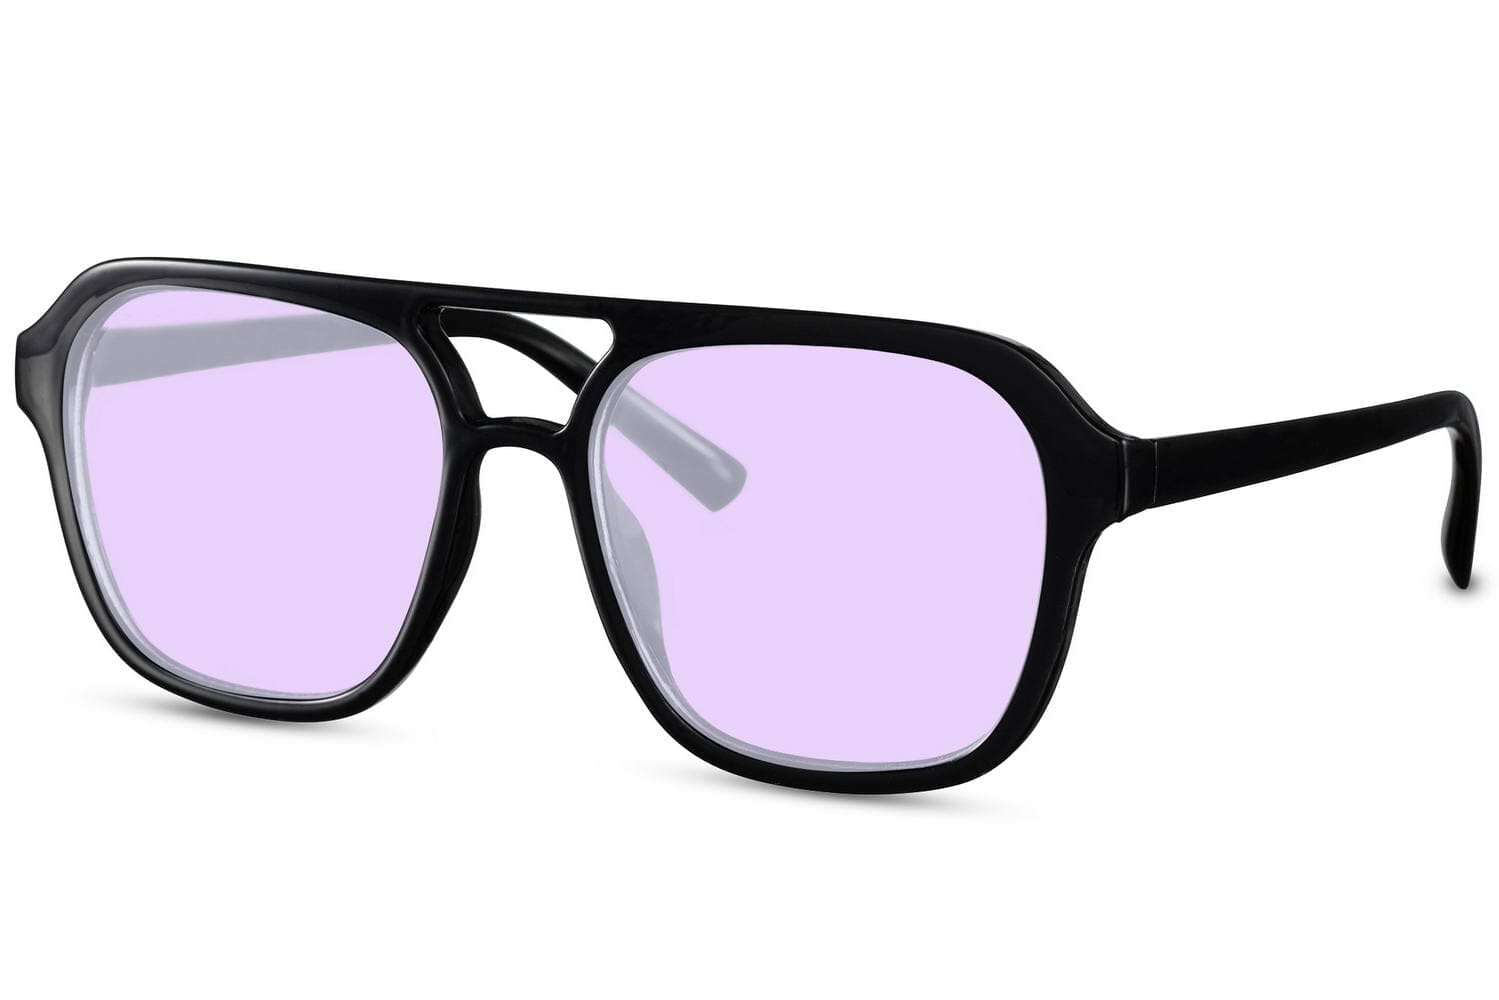 Purple lens aviators side view. Purple lenses. Black acetate frames.